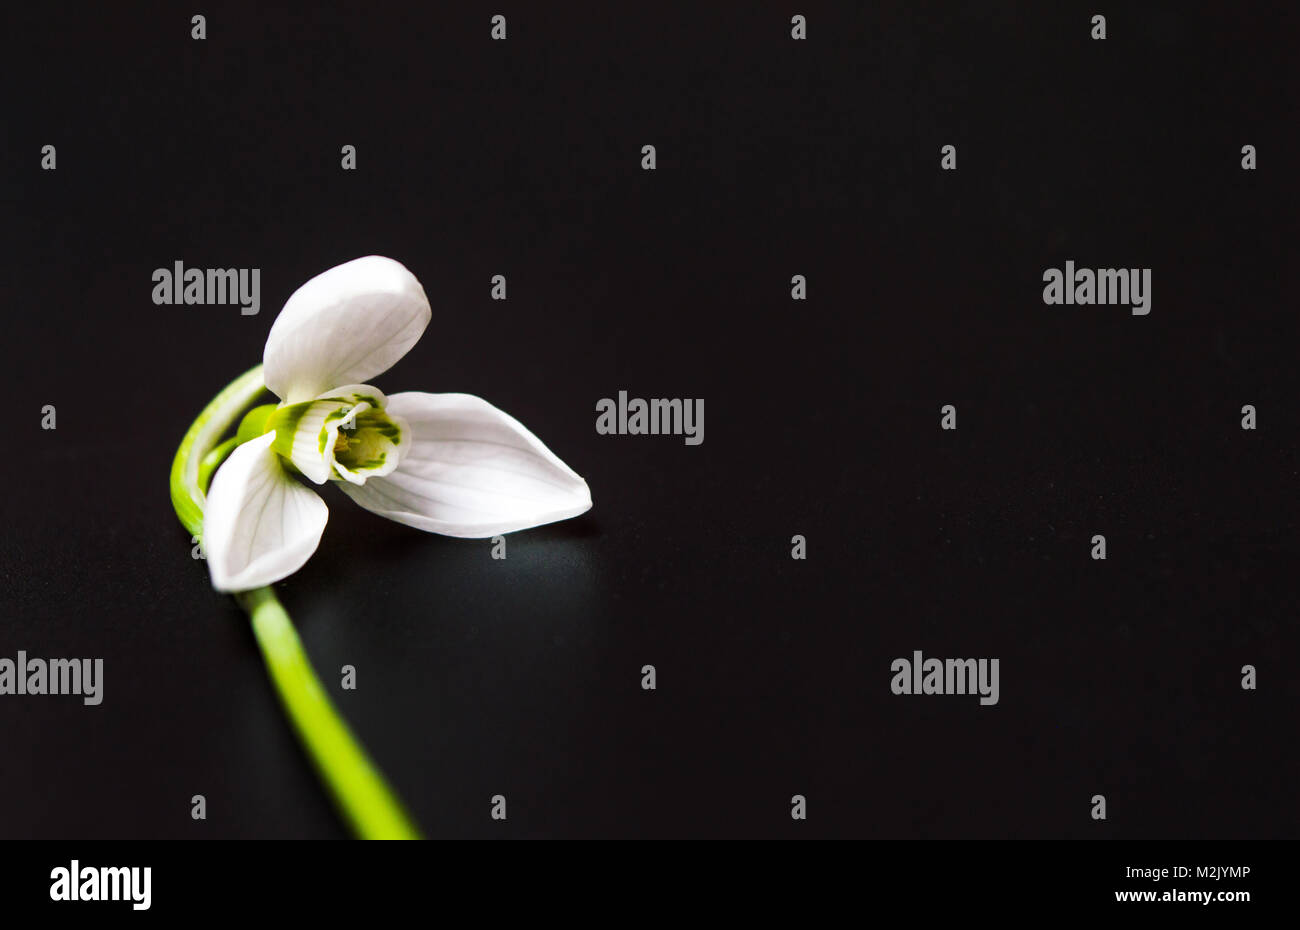 Fresh snowdrop flower on dark background. Spring announcement Stock Photo